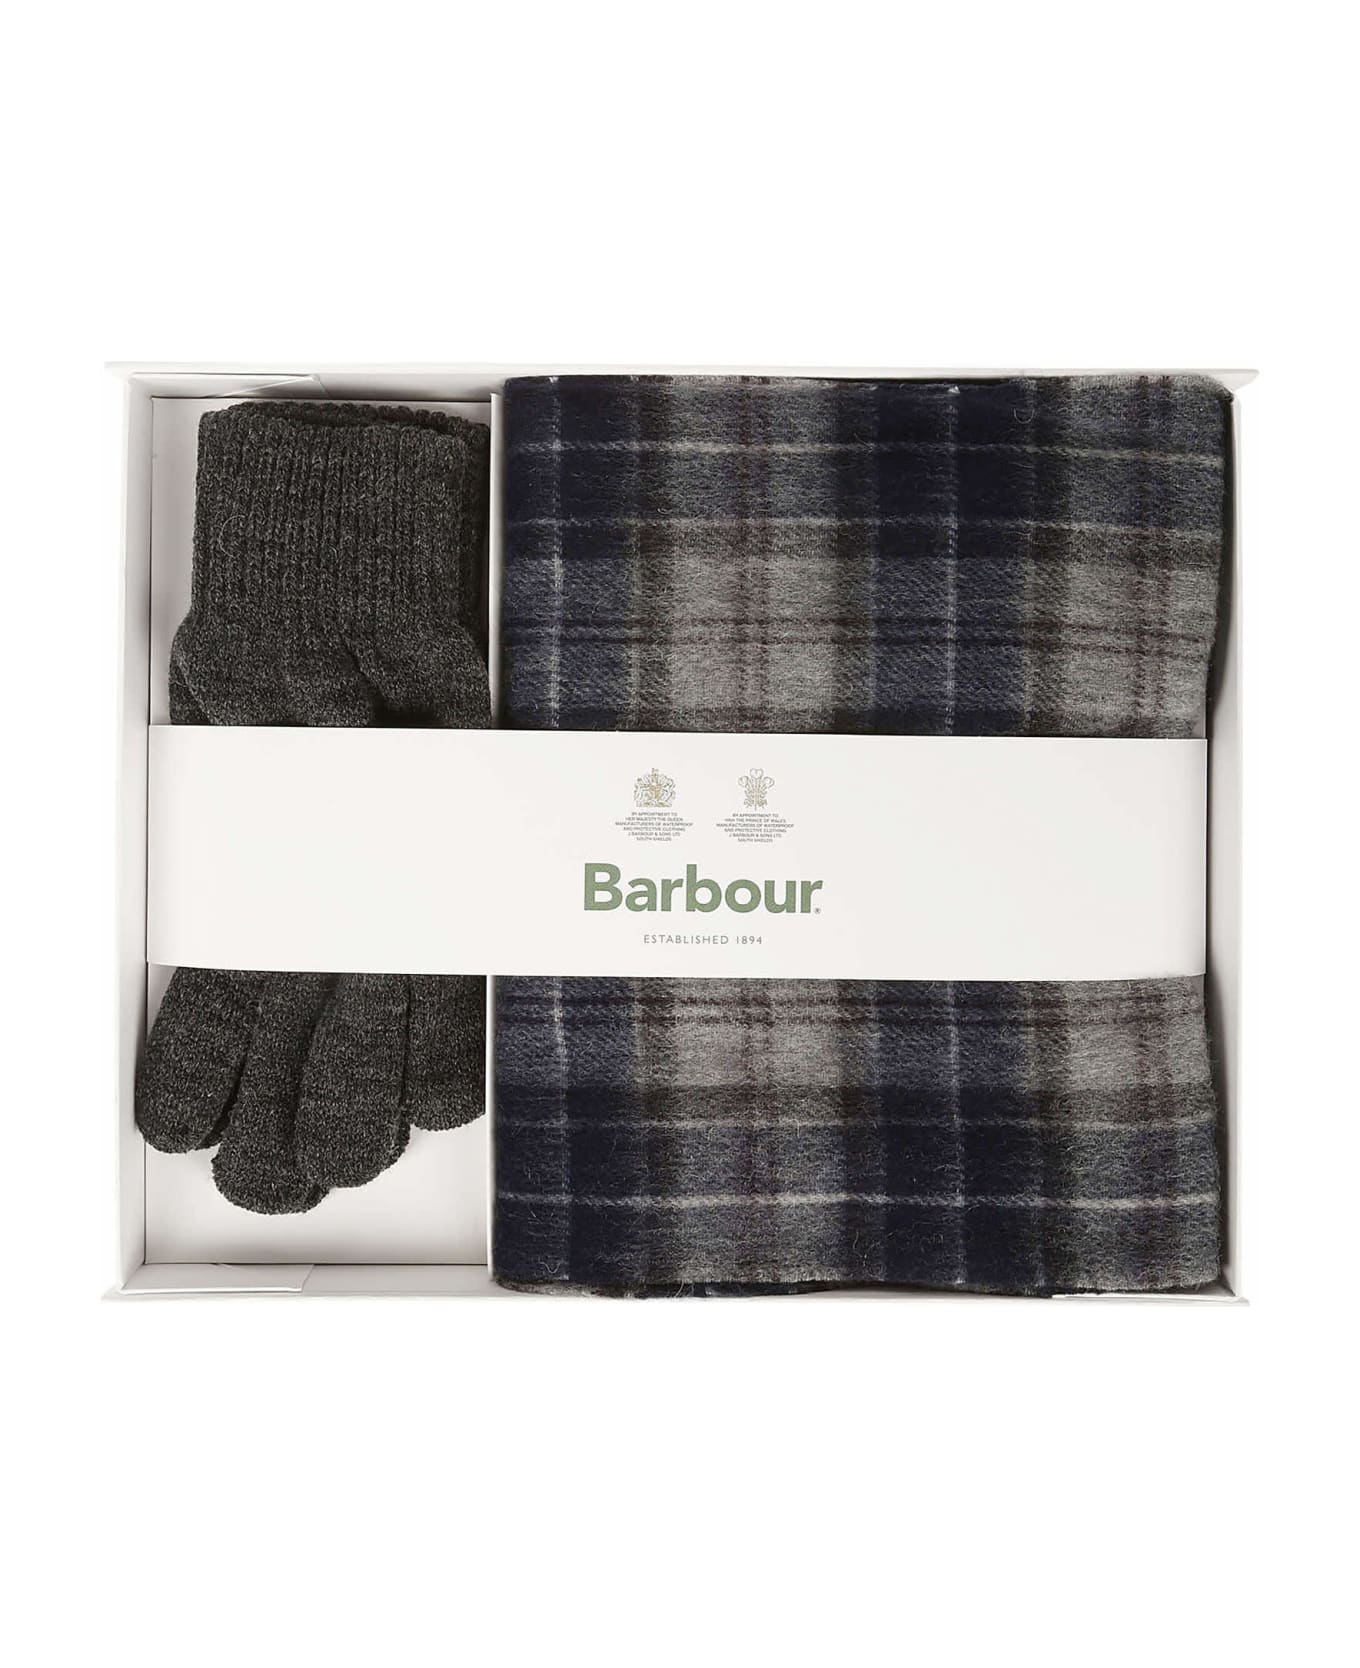 Barbour Scarf And Gloves Gift Set - Black Slate Tartan